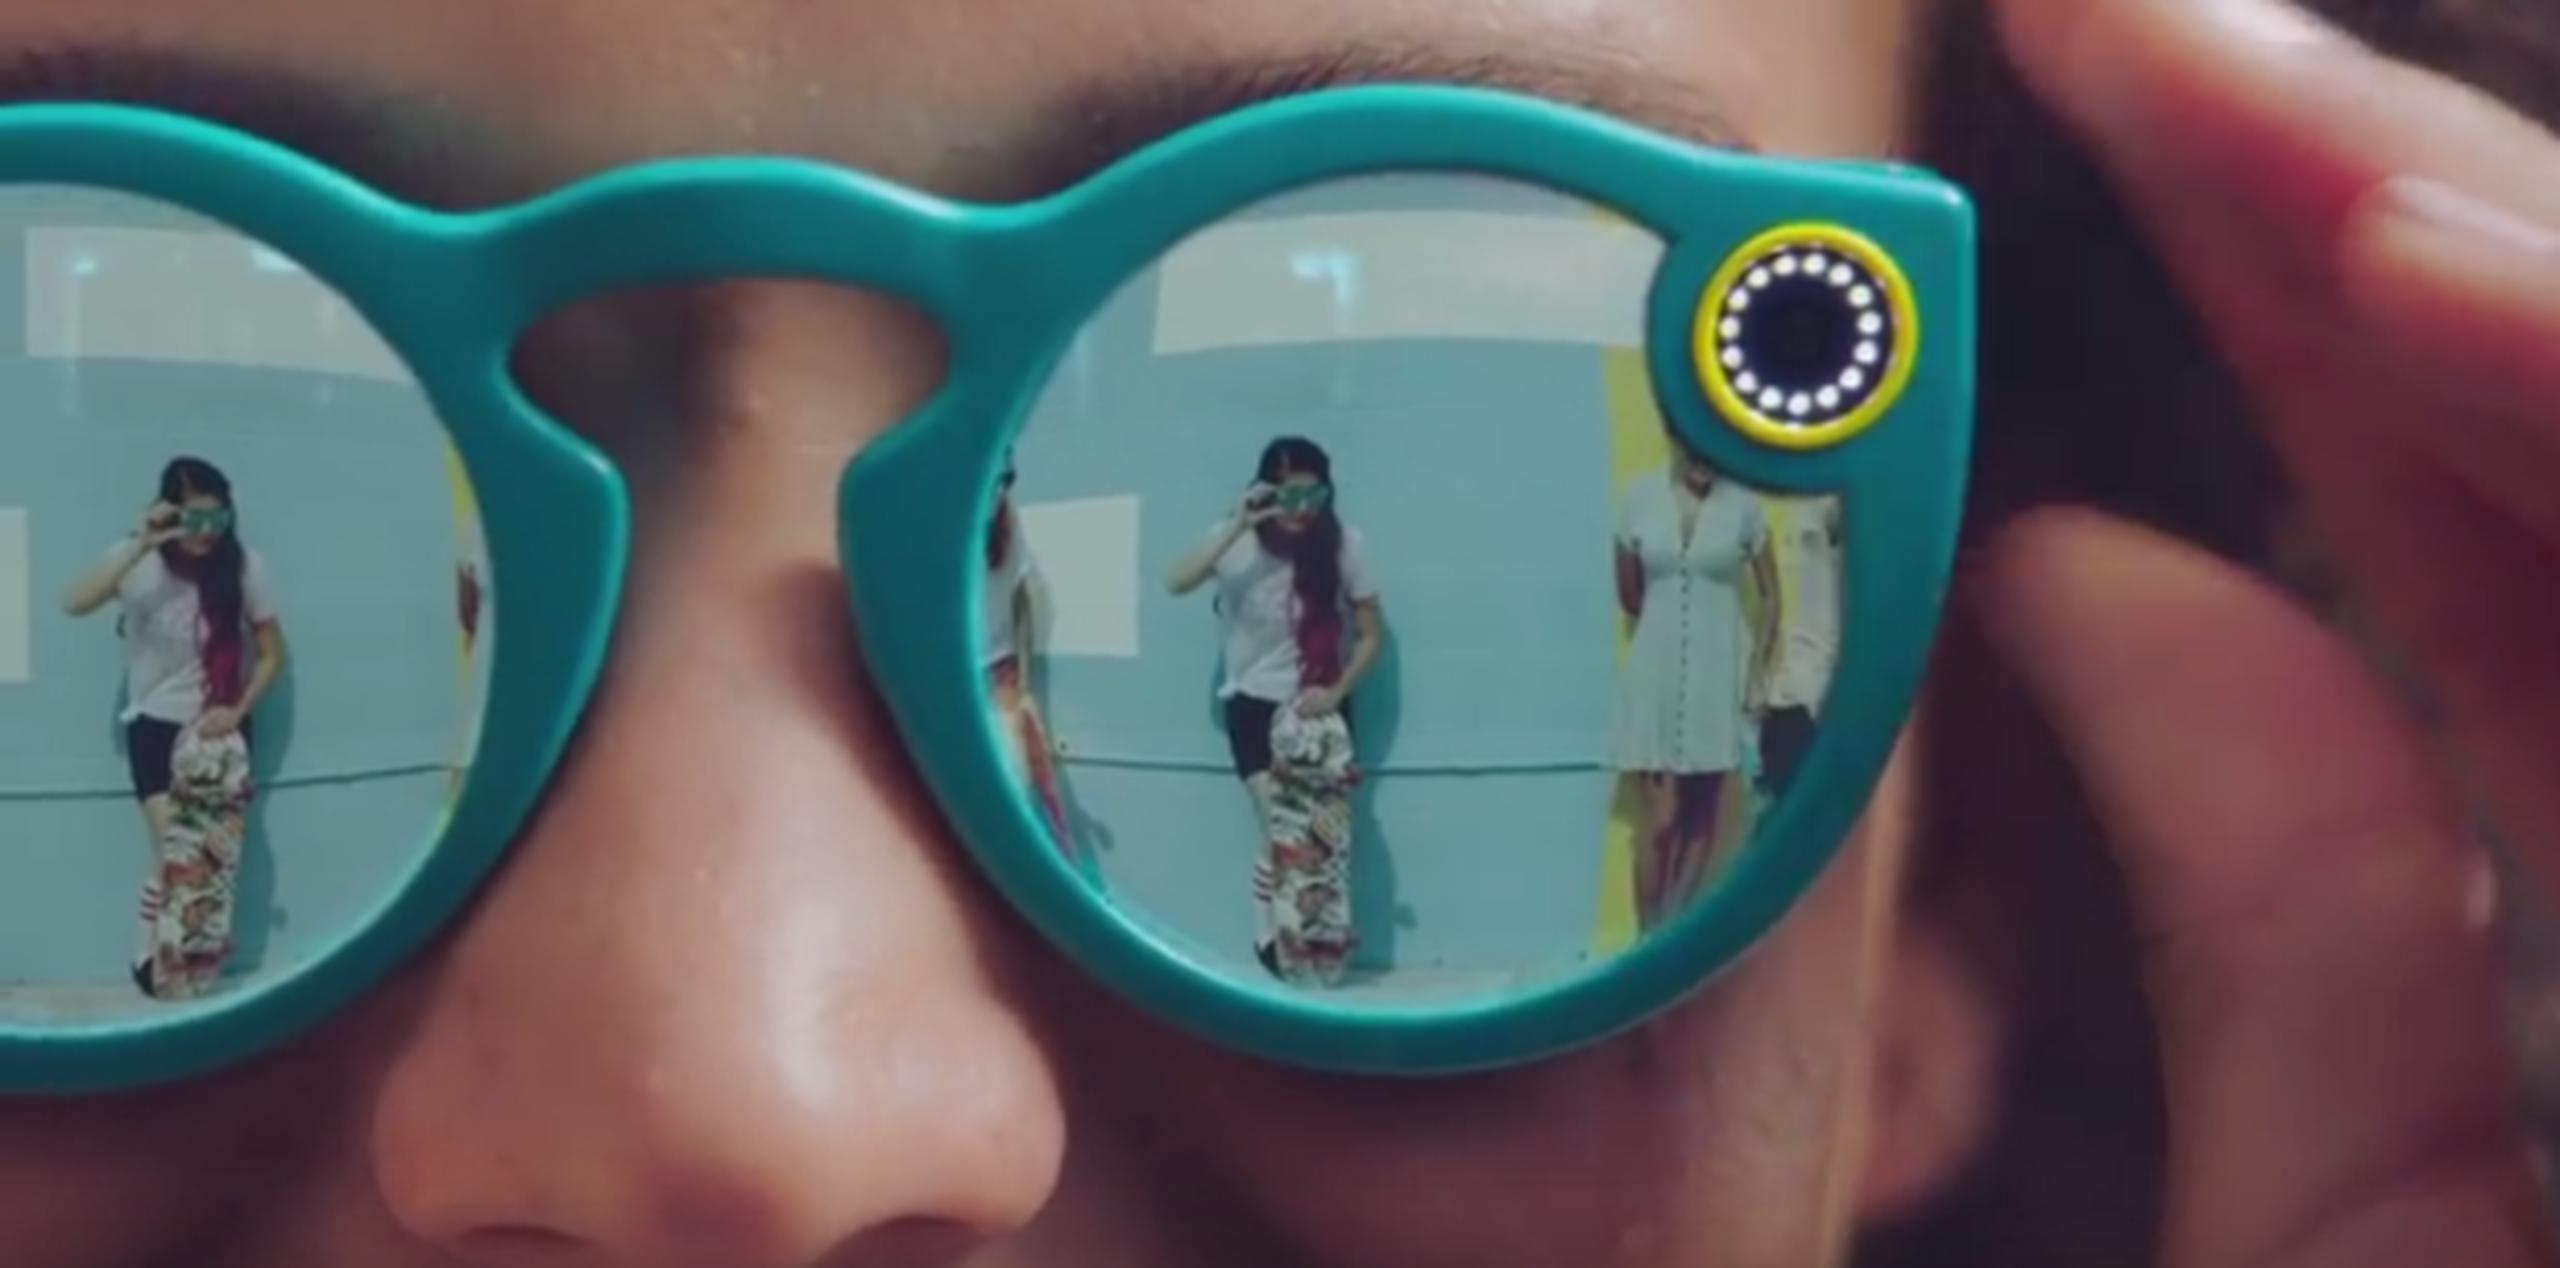 Spectacles pueden grabar 10 segundos de vídeo a la vez al tocar un botón en el dispositivo. (Snapchat)